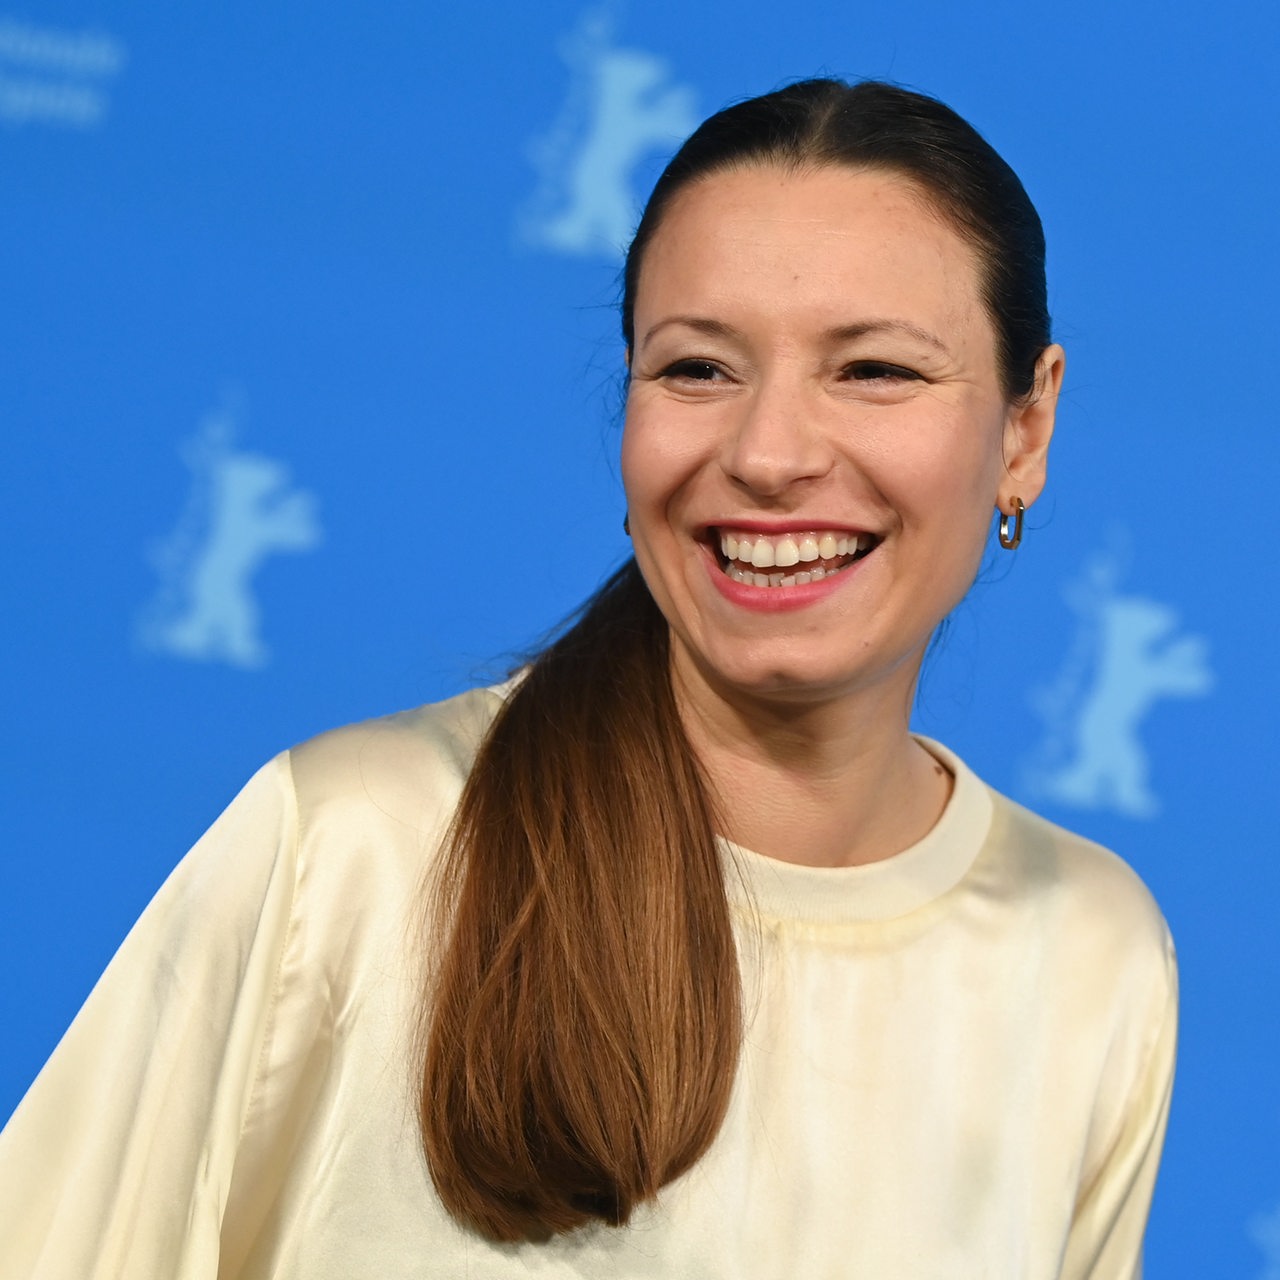 Regisseurin Anne Zohra Berrached , Mitglied der Jury, lächelt während des Pressetermins der Internationalen Jury der Berlinale.